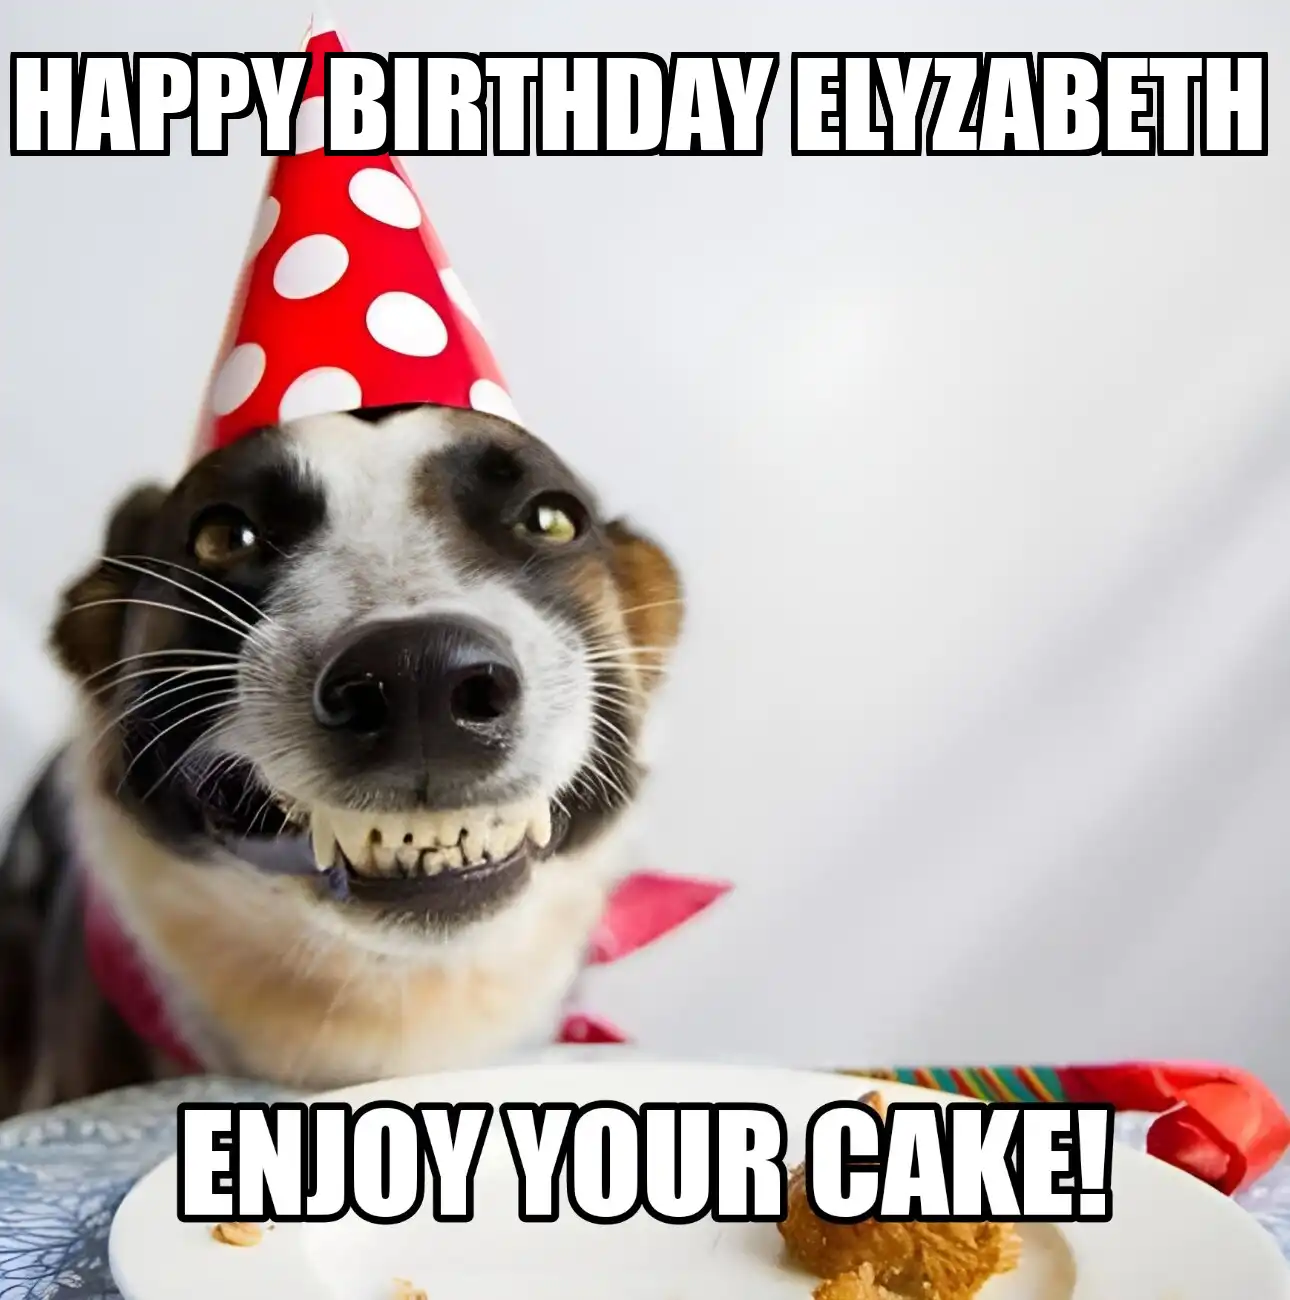 Happy Birthday Elyzabeth Enjoy Your Cake Dog Meme